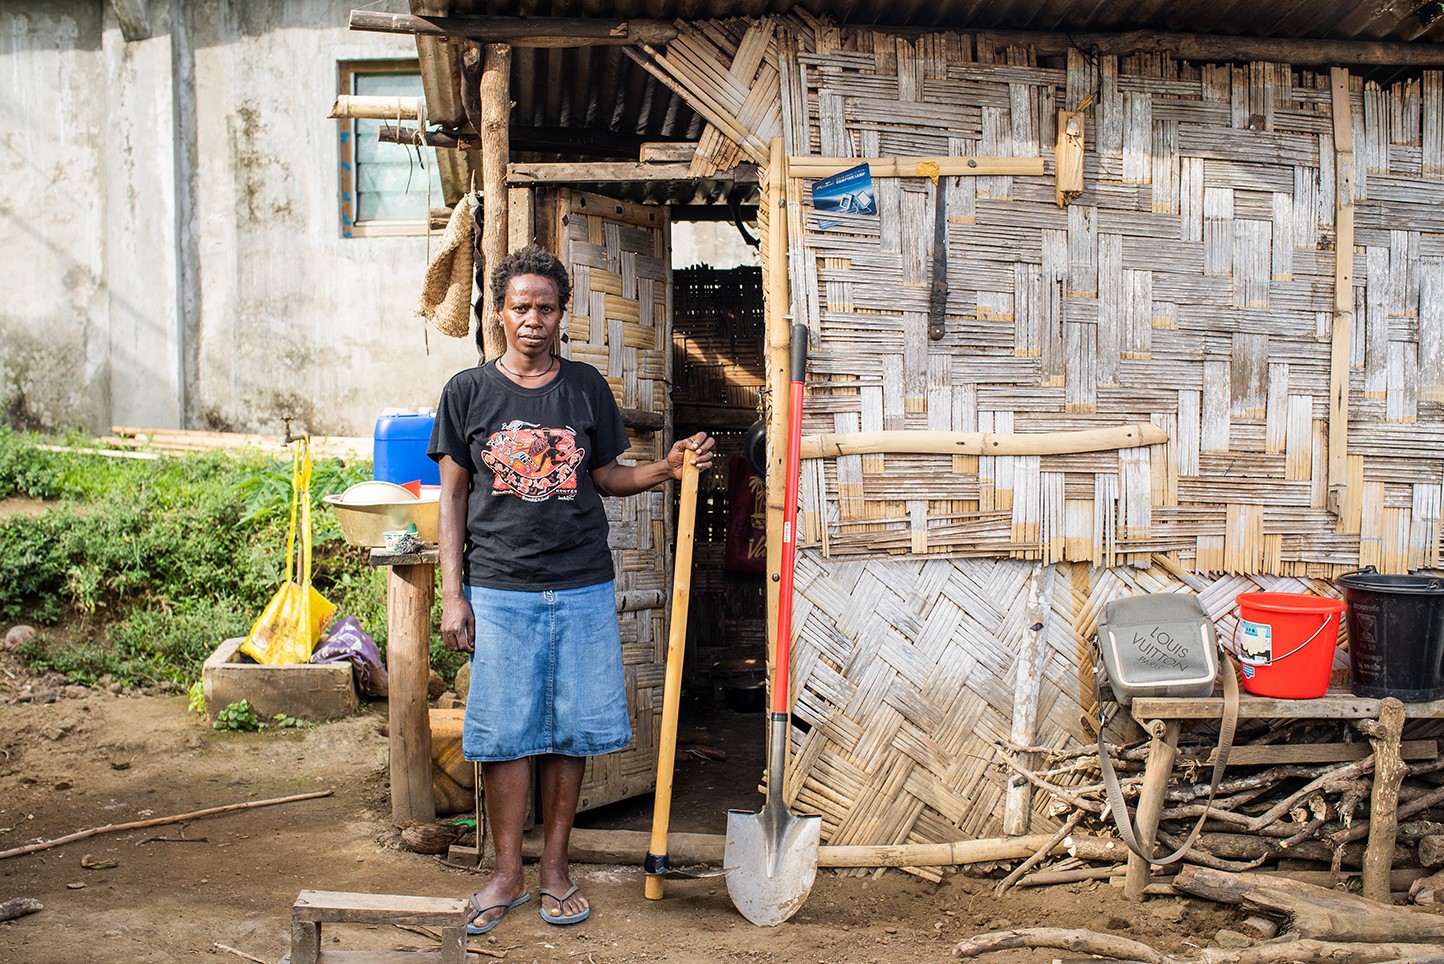 Roslyns Geschichte nach dem Zyklon Harold in Vanuatu: ShelterBox unterstützt Familien mit Hilfsgütern